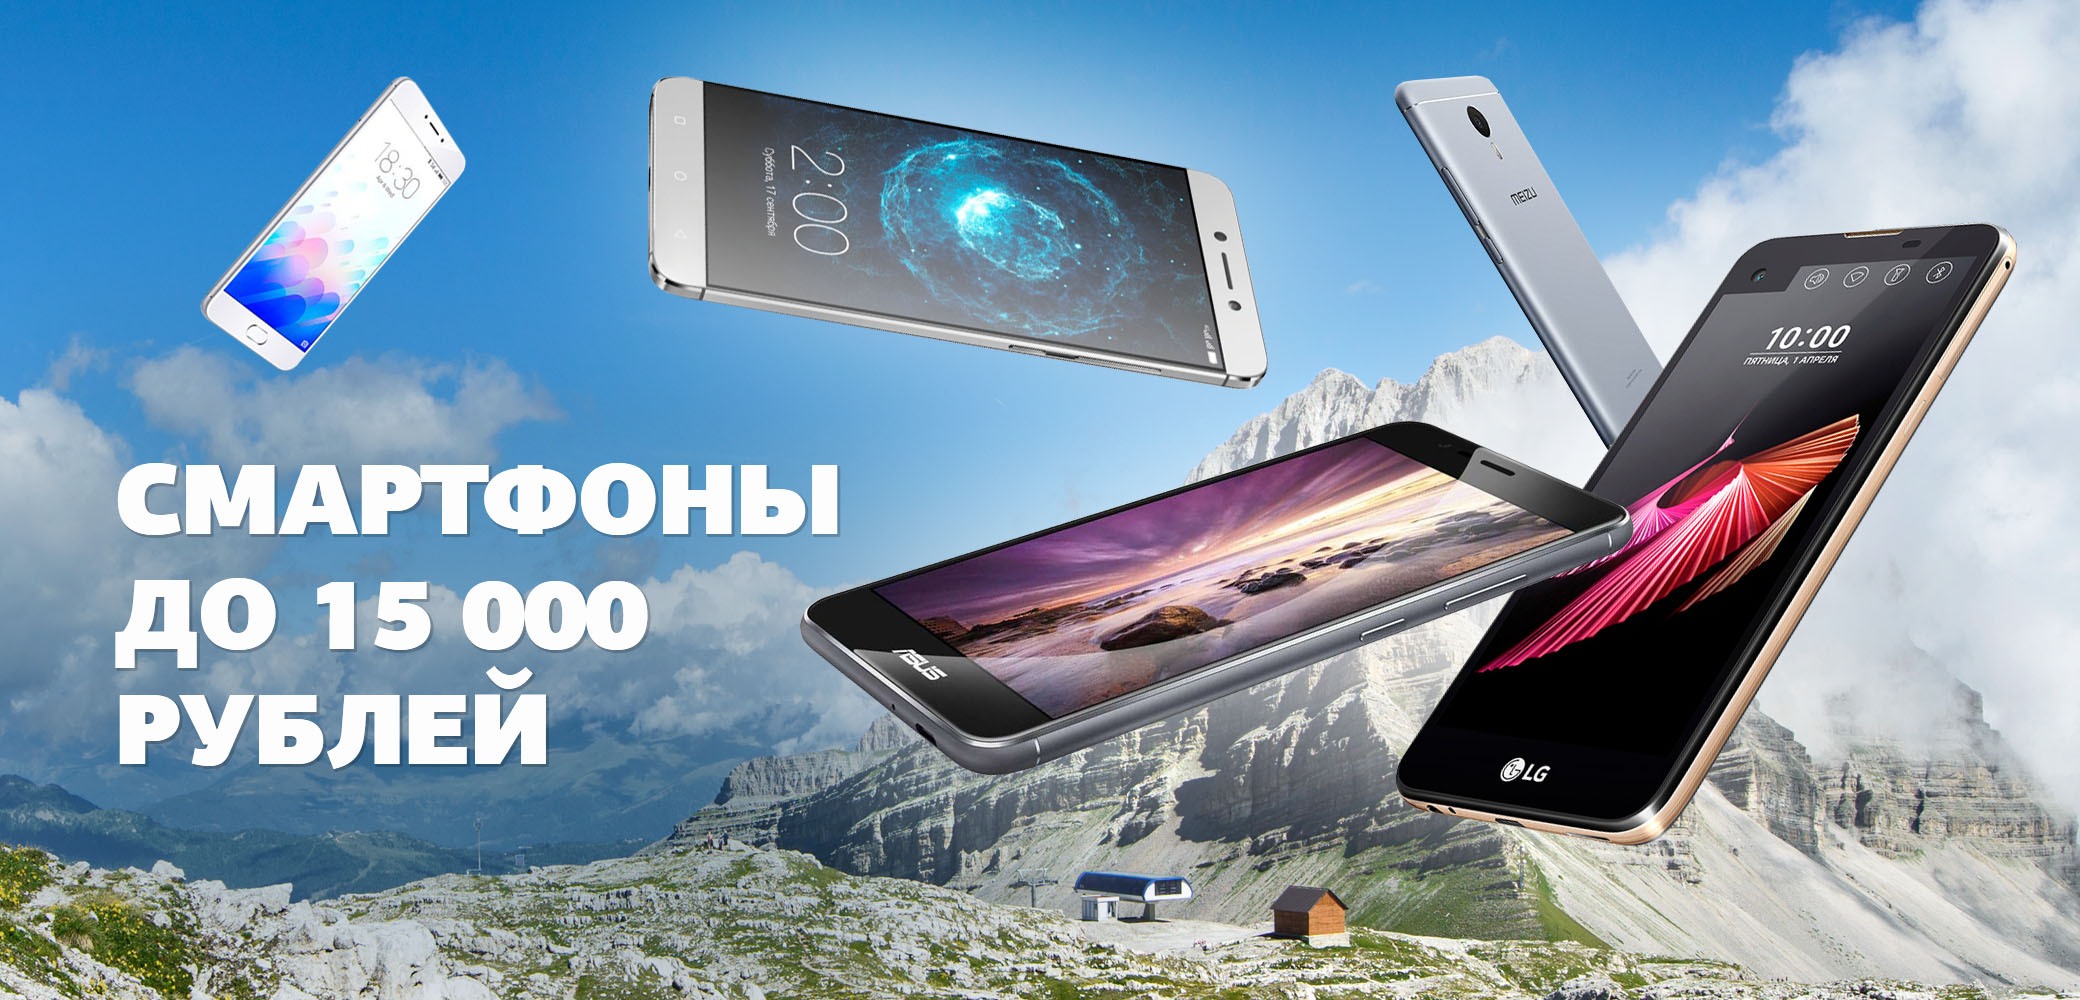 Смартфоны до 15000 рублей